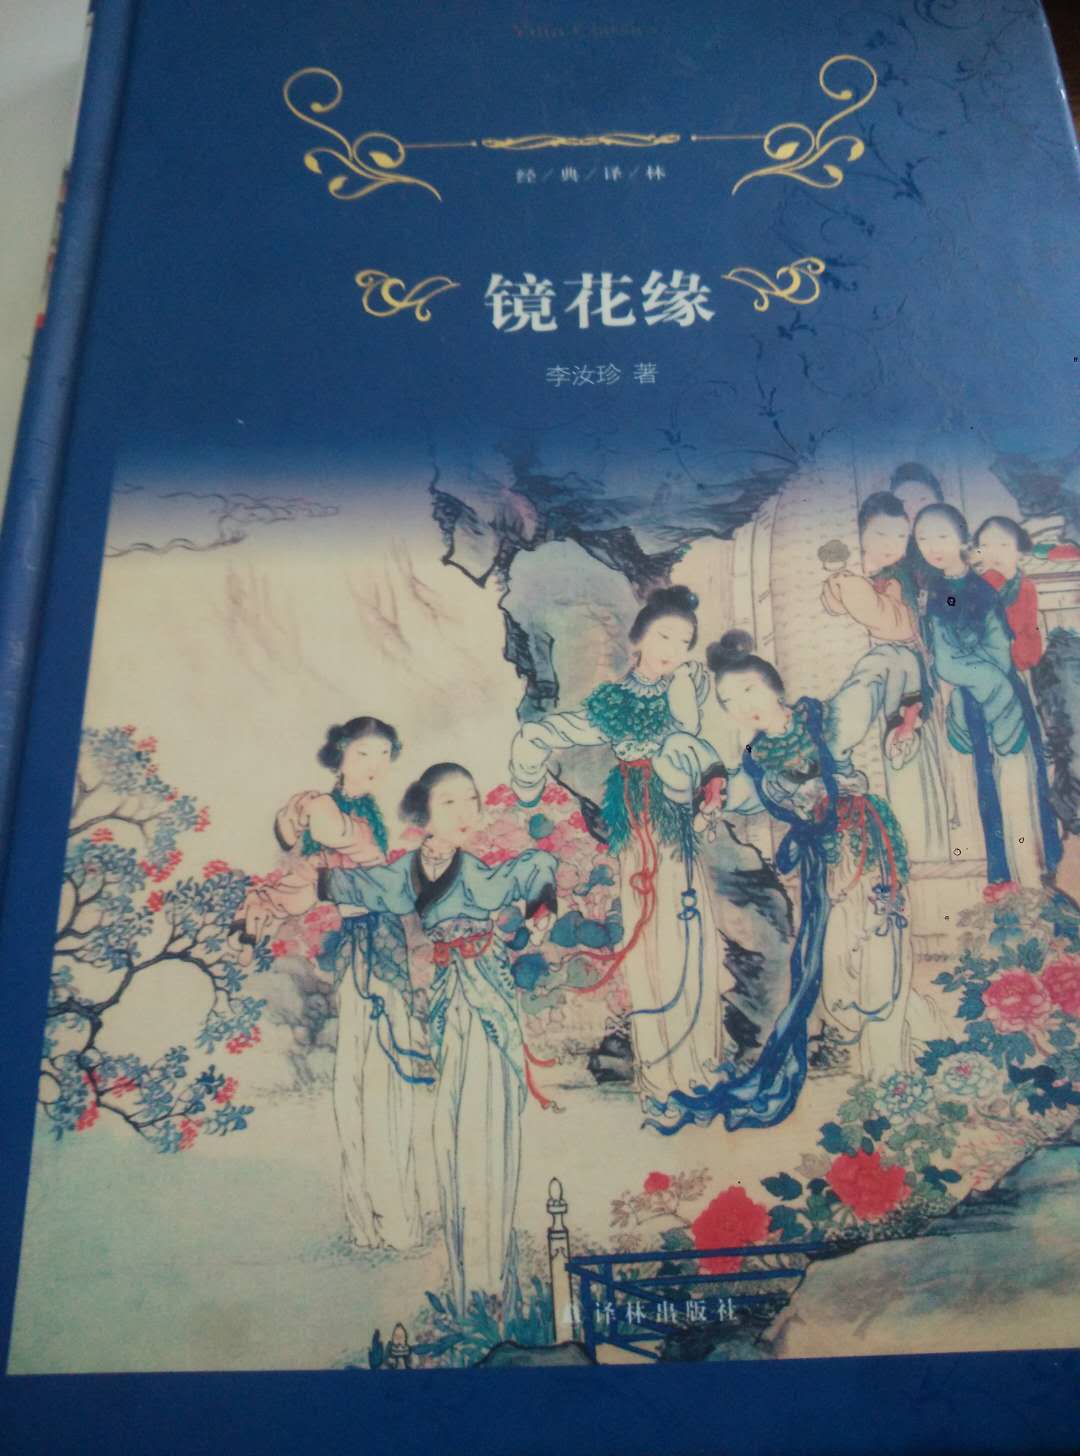 译林出版社，中华书局的都很不错的，纸质很好，一直信赖。